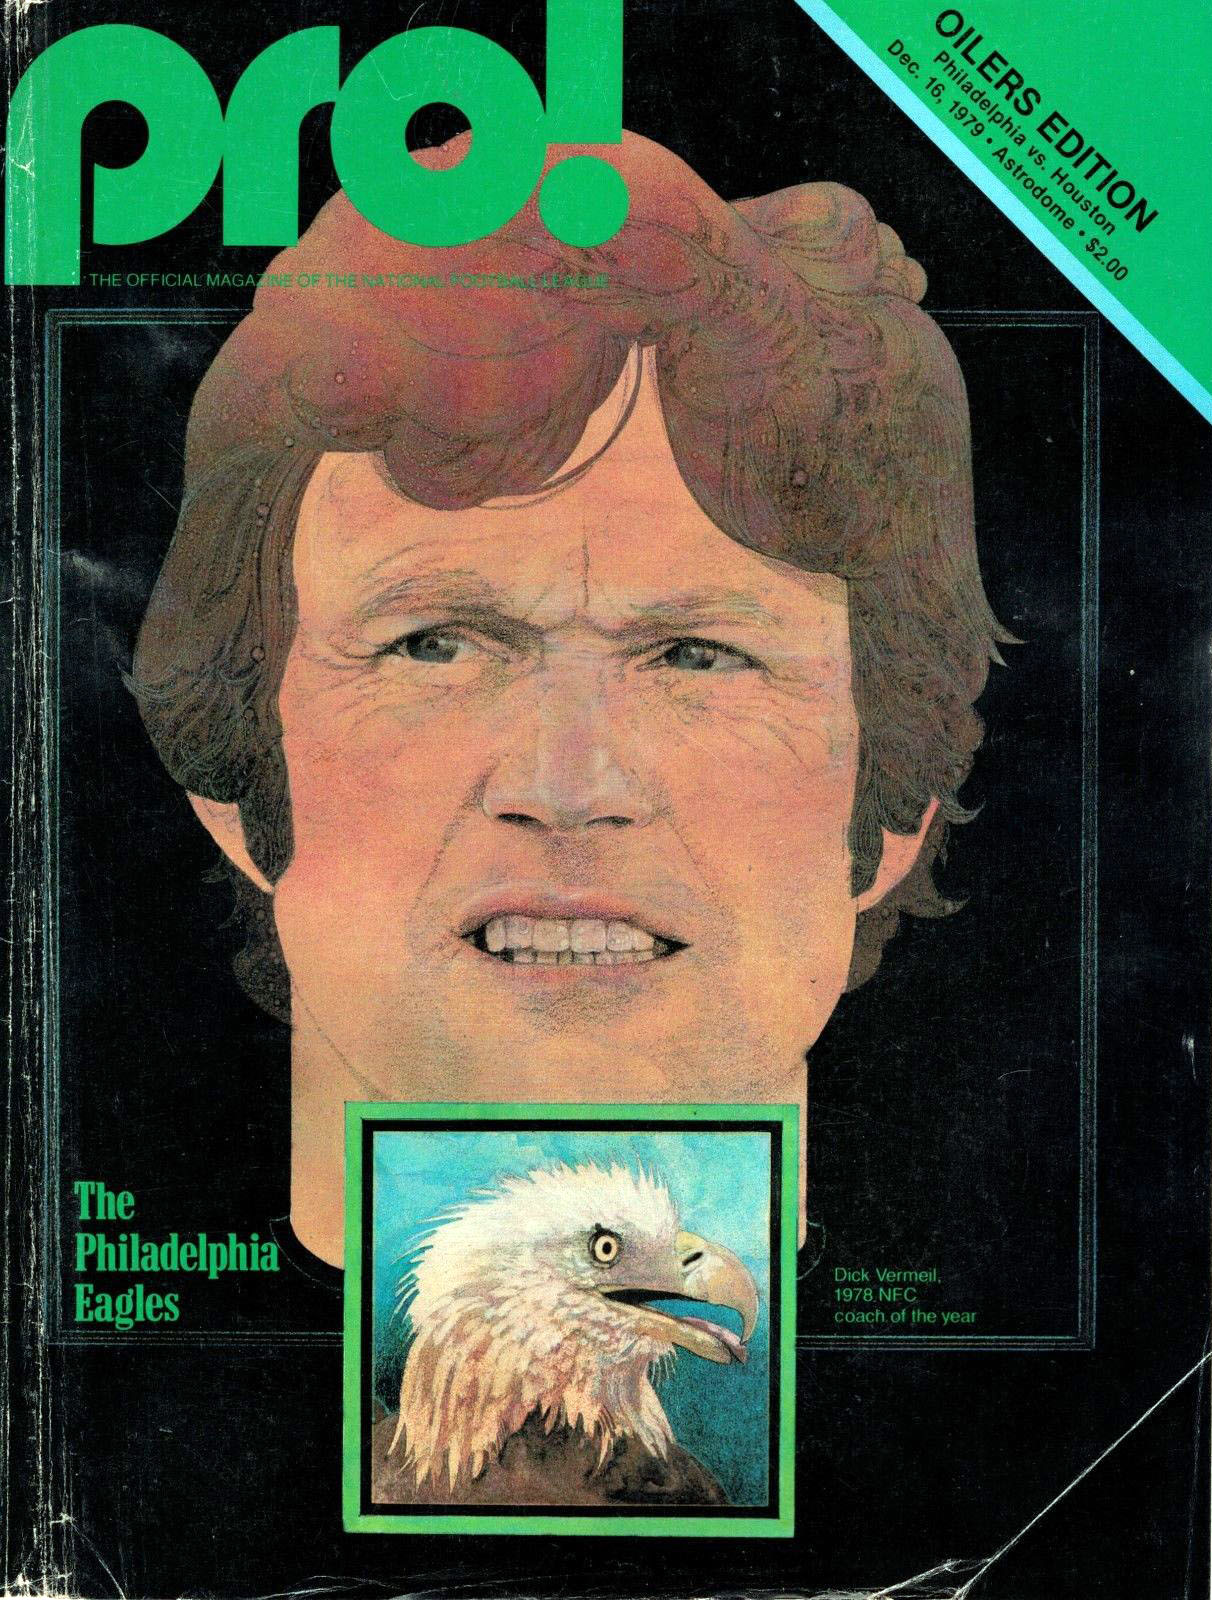 Houston Oilers vs. Philadelphia Eagles (December 16, 1979)